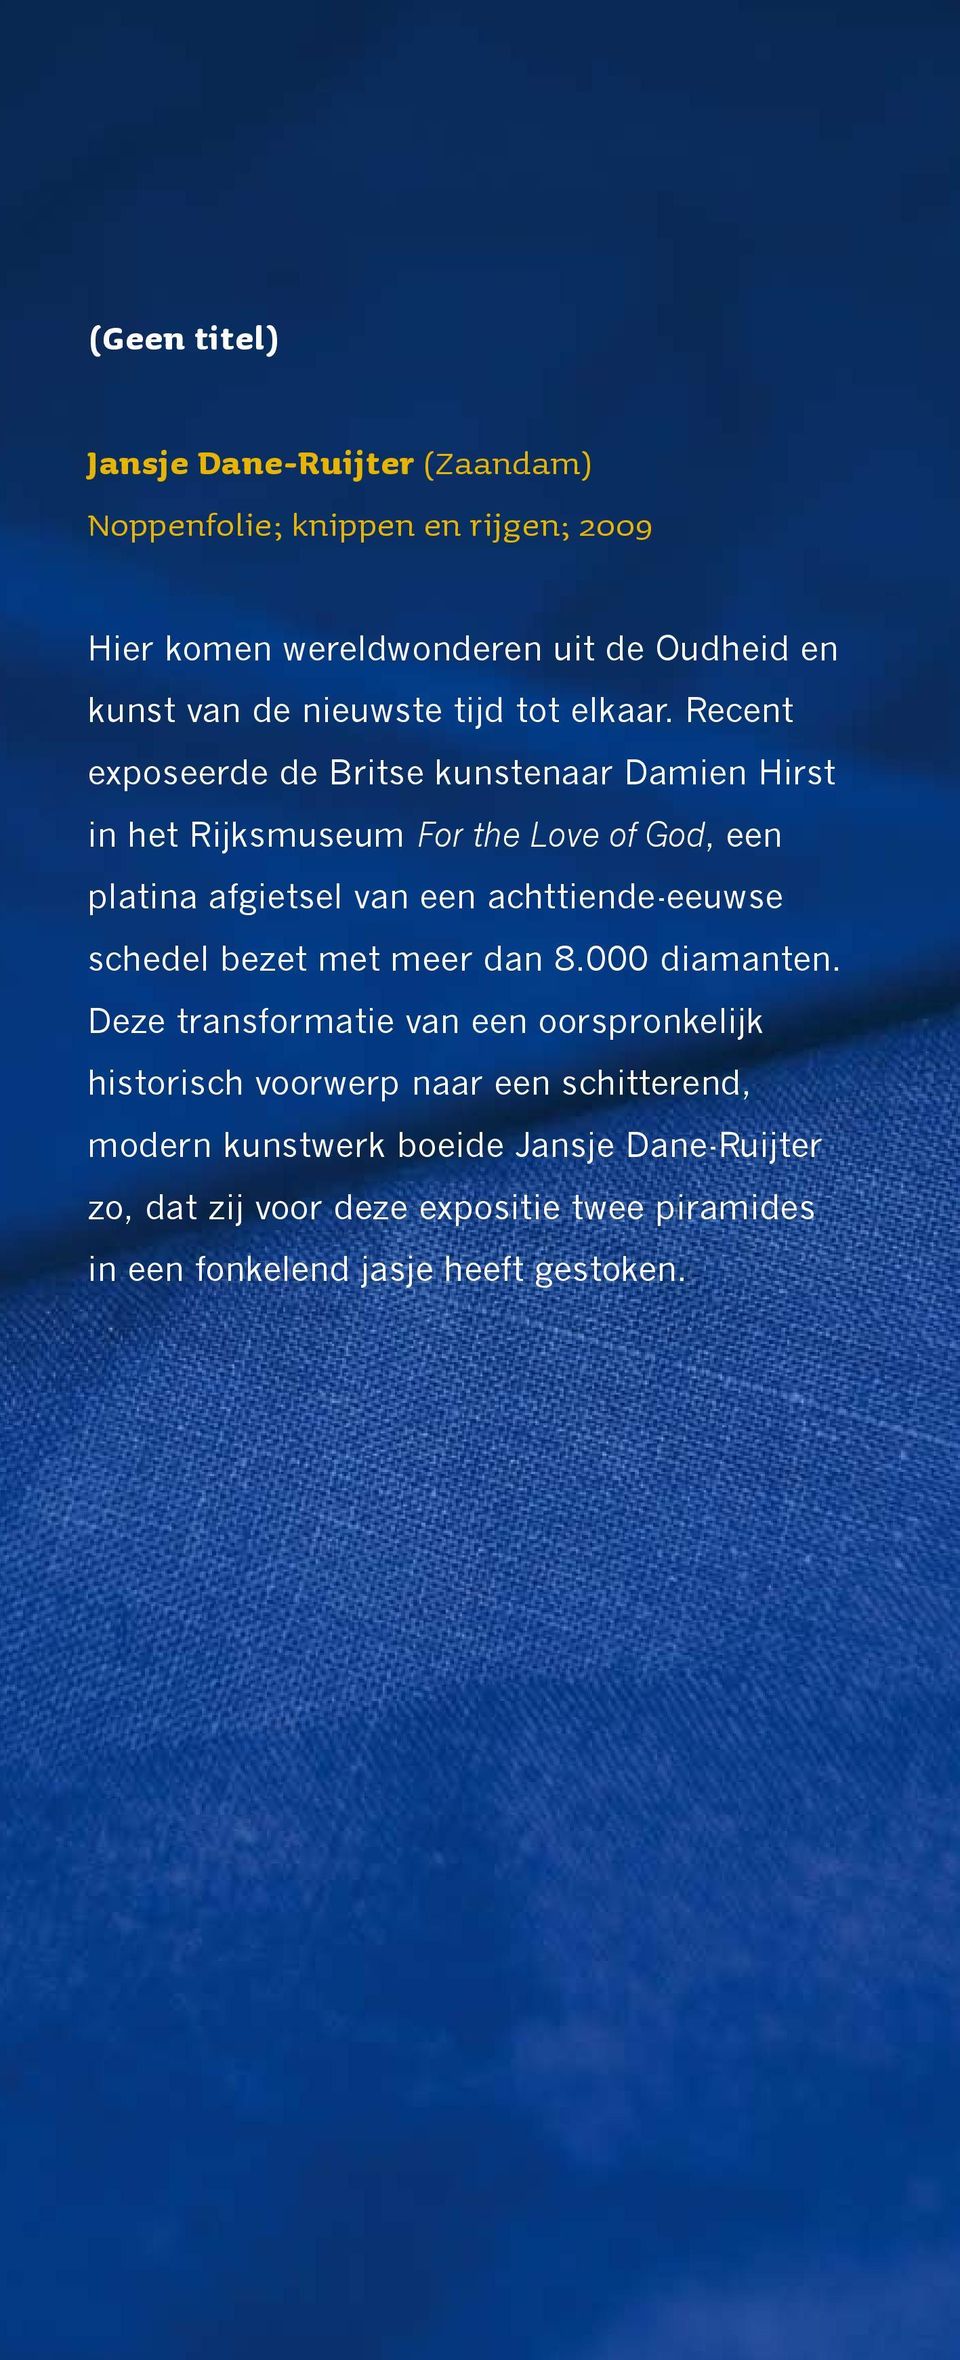 Recent exposeerde de Britse kunstenaar Damien Hirst in het Rijksmuseum For the Love of God, een platina afgietsel van een achttiende-eeuwse